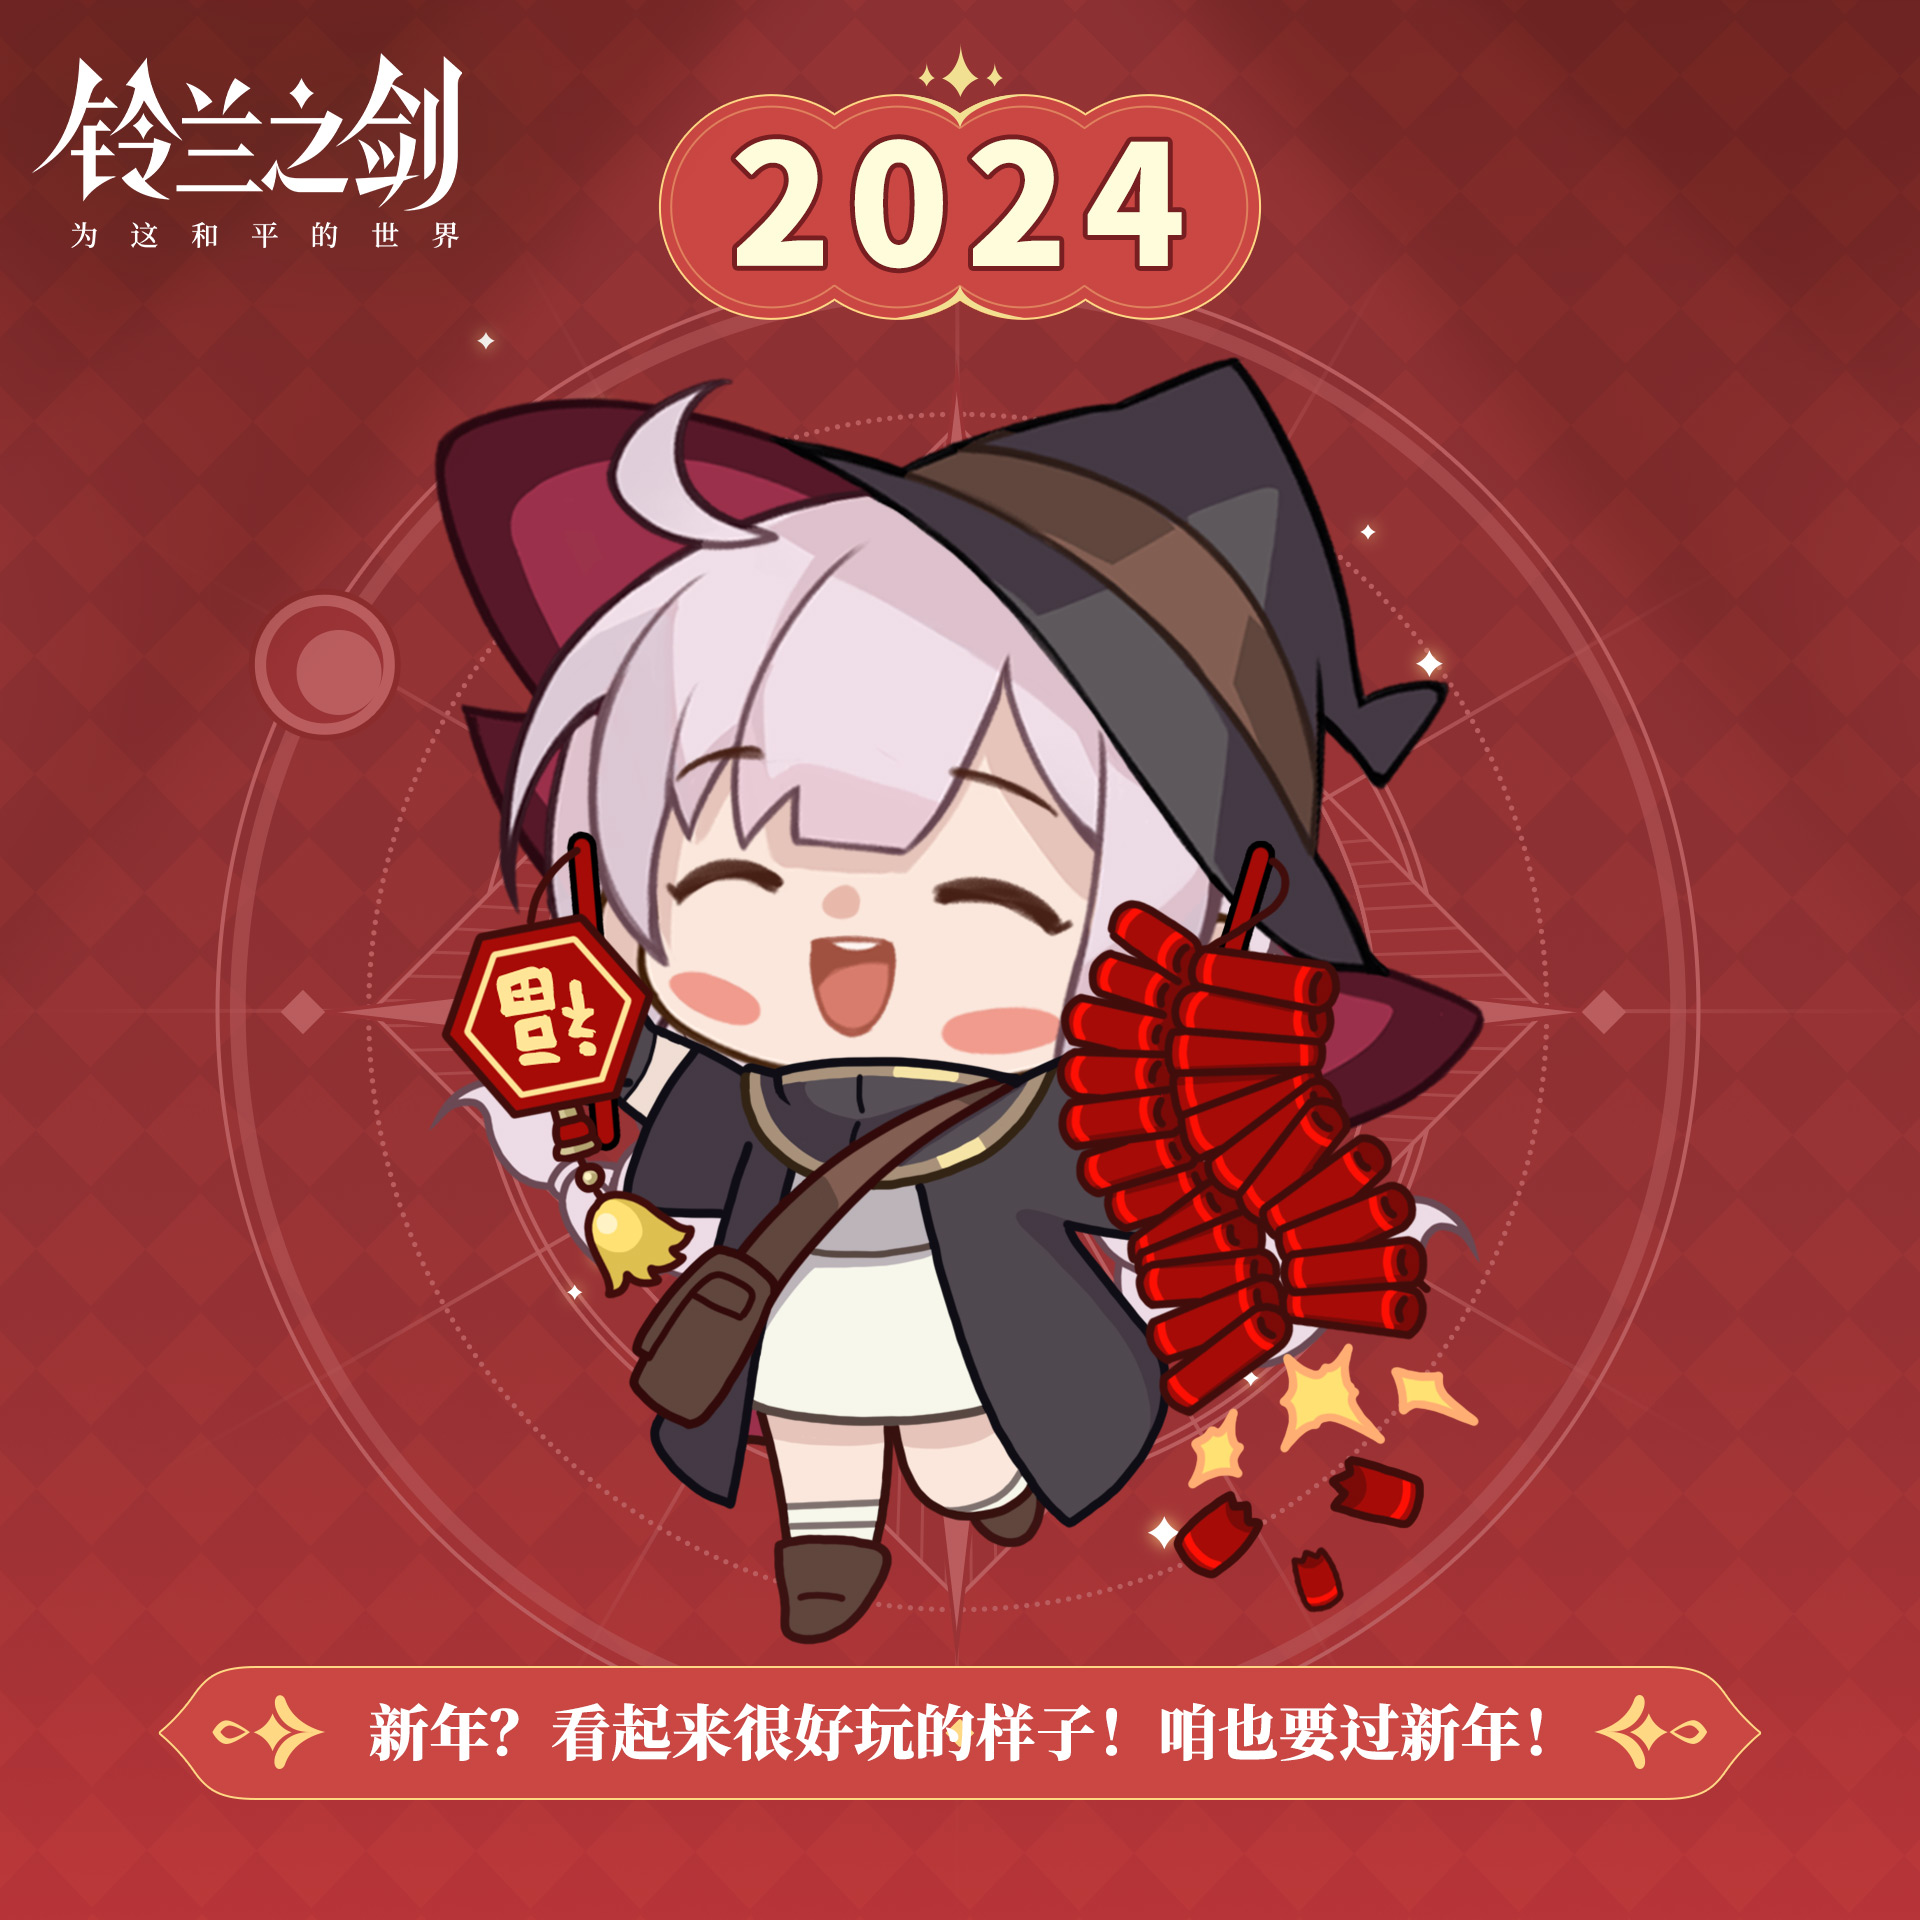 【2024新春特别活动】贝拉的礼包码放送